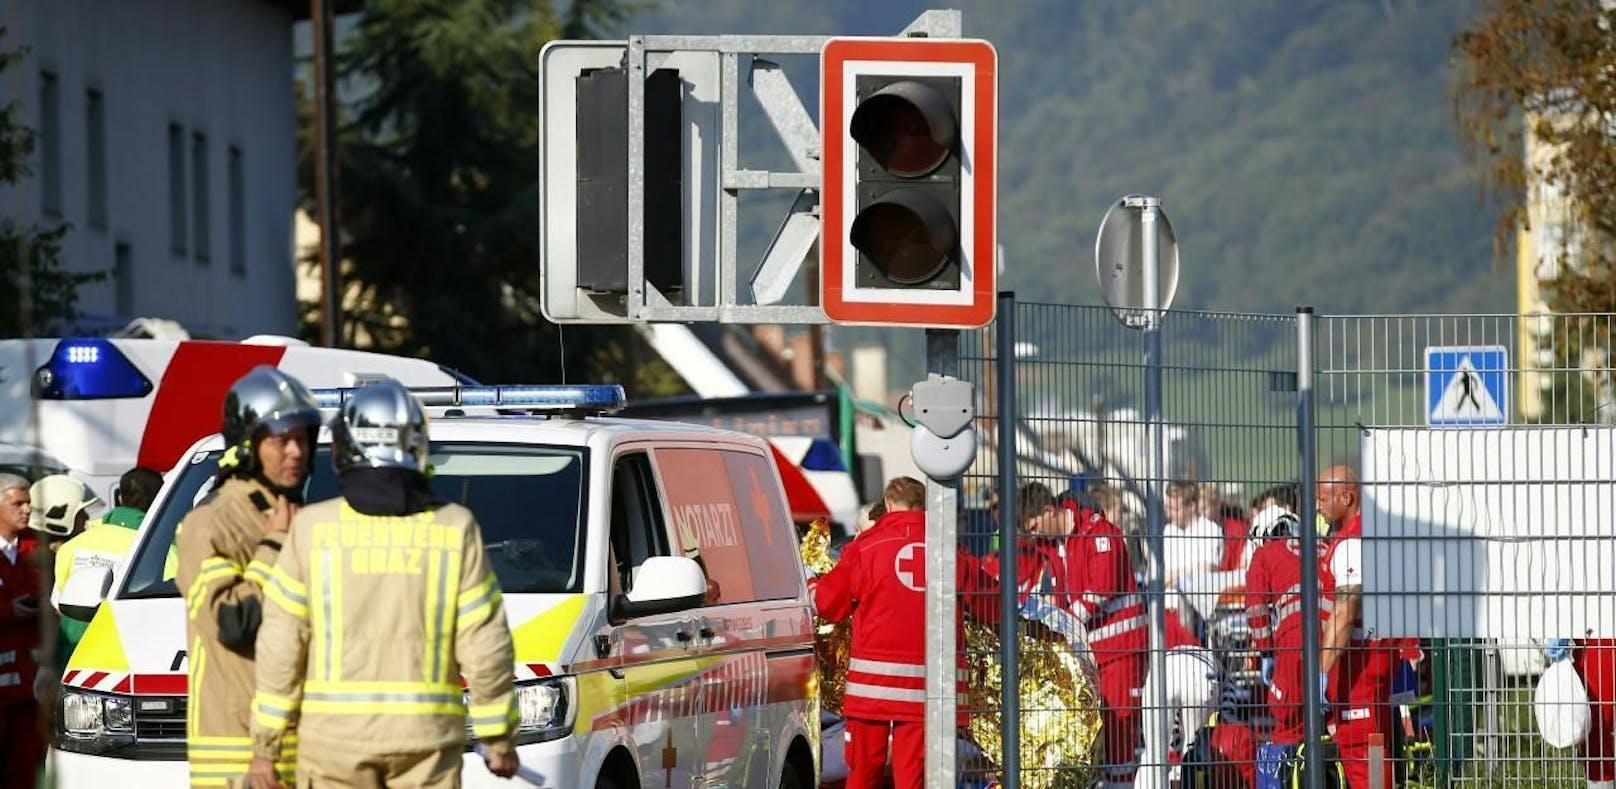 Der Unfall ereignete sich auf einem unbeschranktem Bahnübergang in Graz gegen 16 Uhr (Symbolbild).